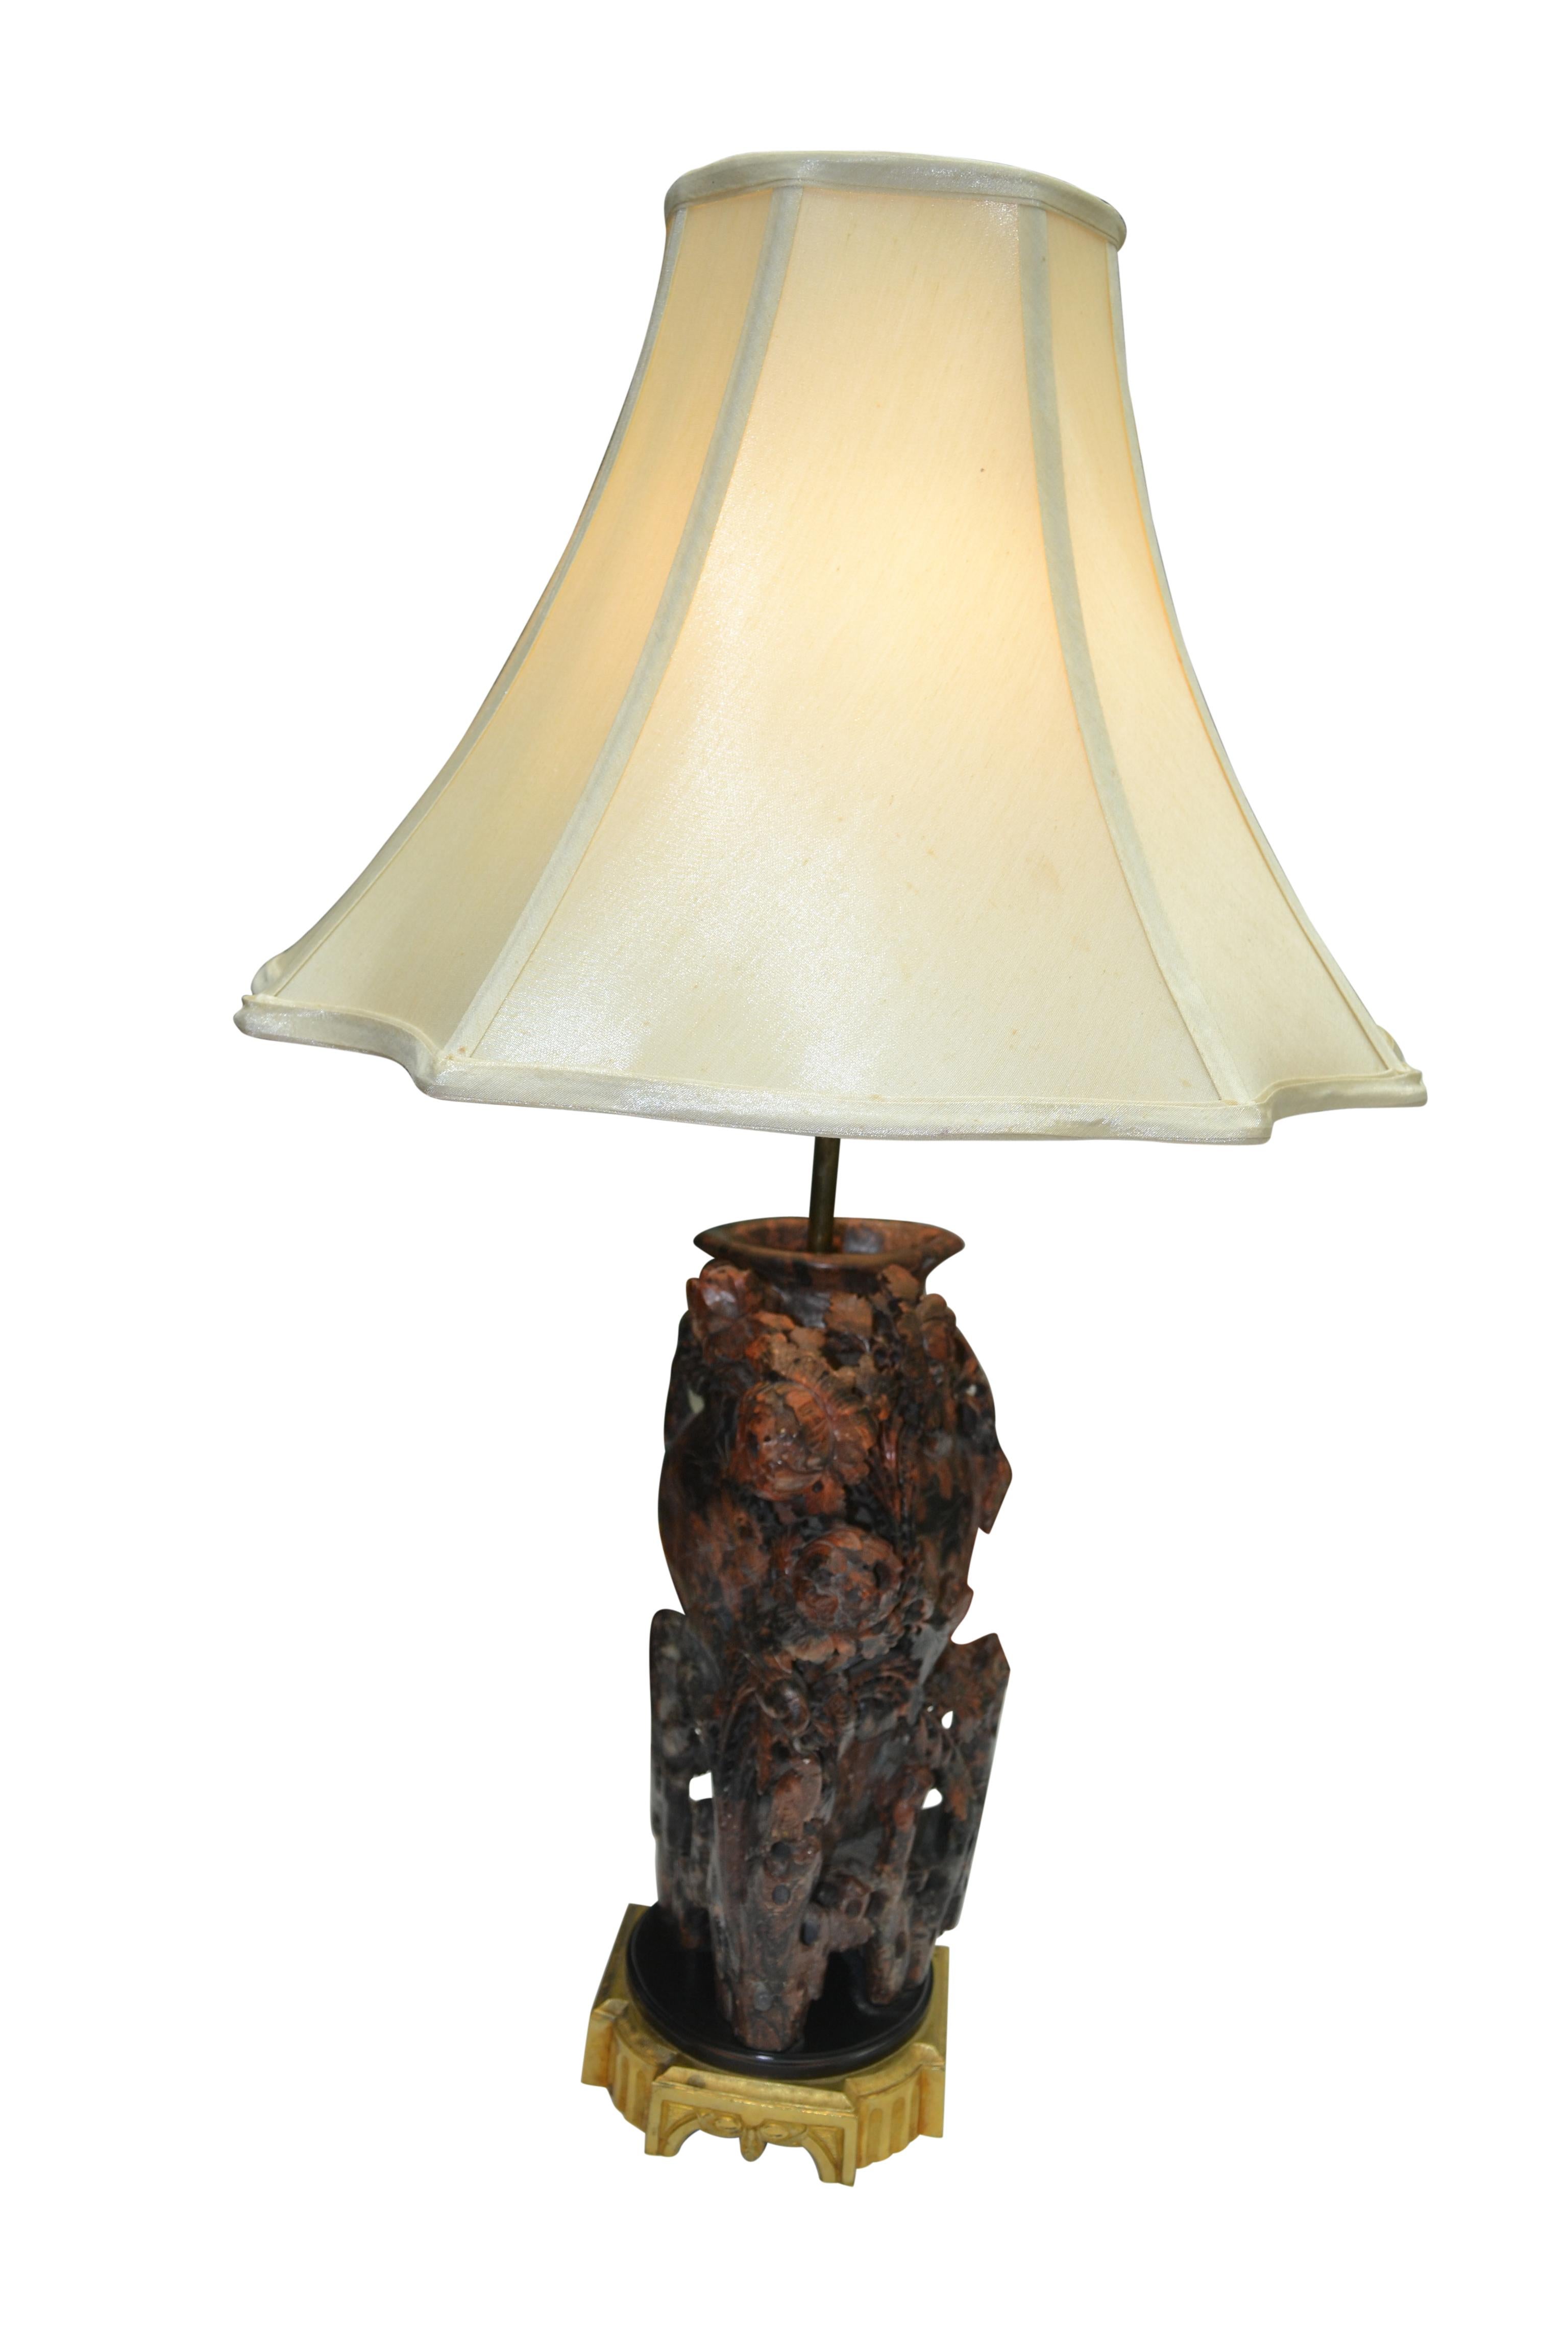 Une base de lampe en stéatite sculptée, inhabituelle en raison de la couleur de la pierre : rougeâtre, marron et noire. La sculpture a la forme d'un vase qui est presque entièrement incrusté de 